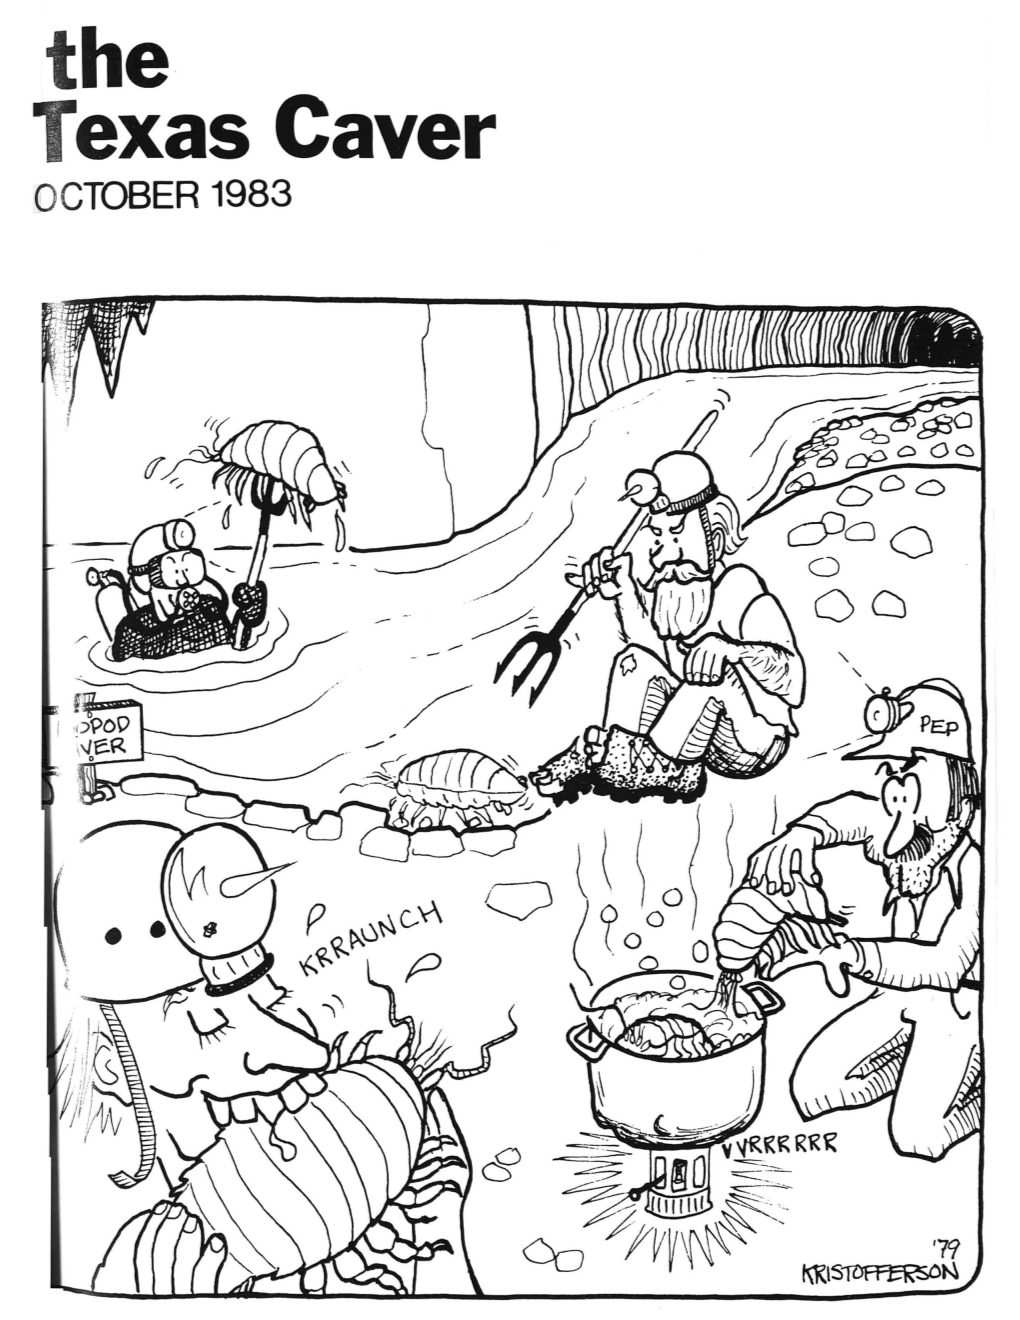 Texas Caver OCTOBER 1983 the Texas Caver Vol